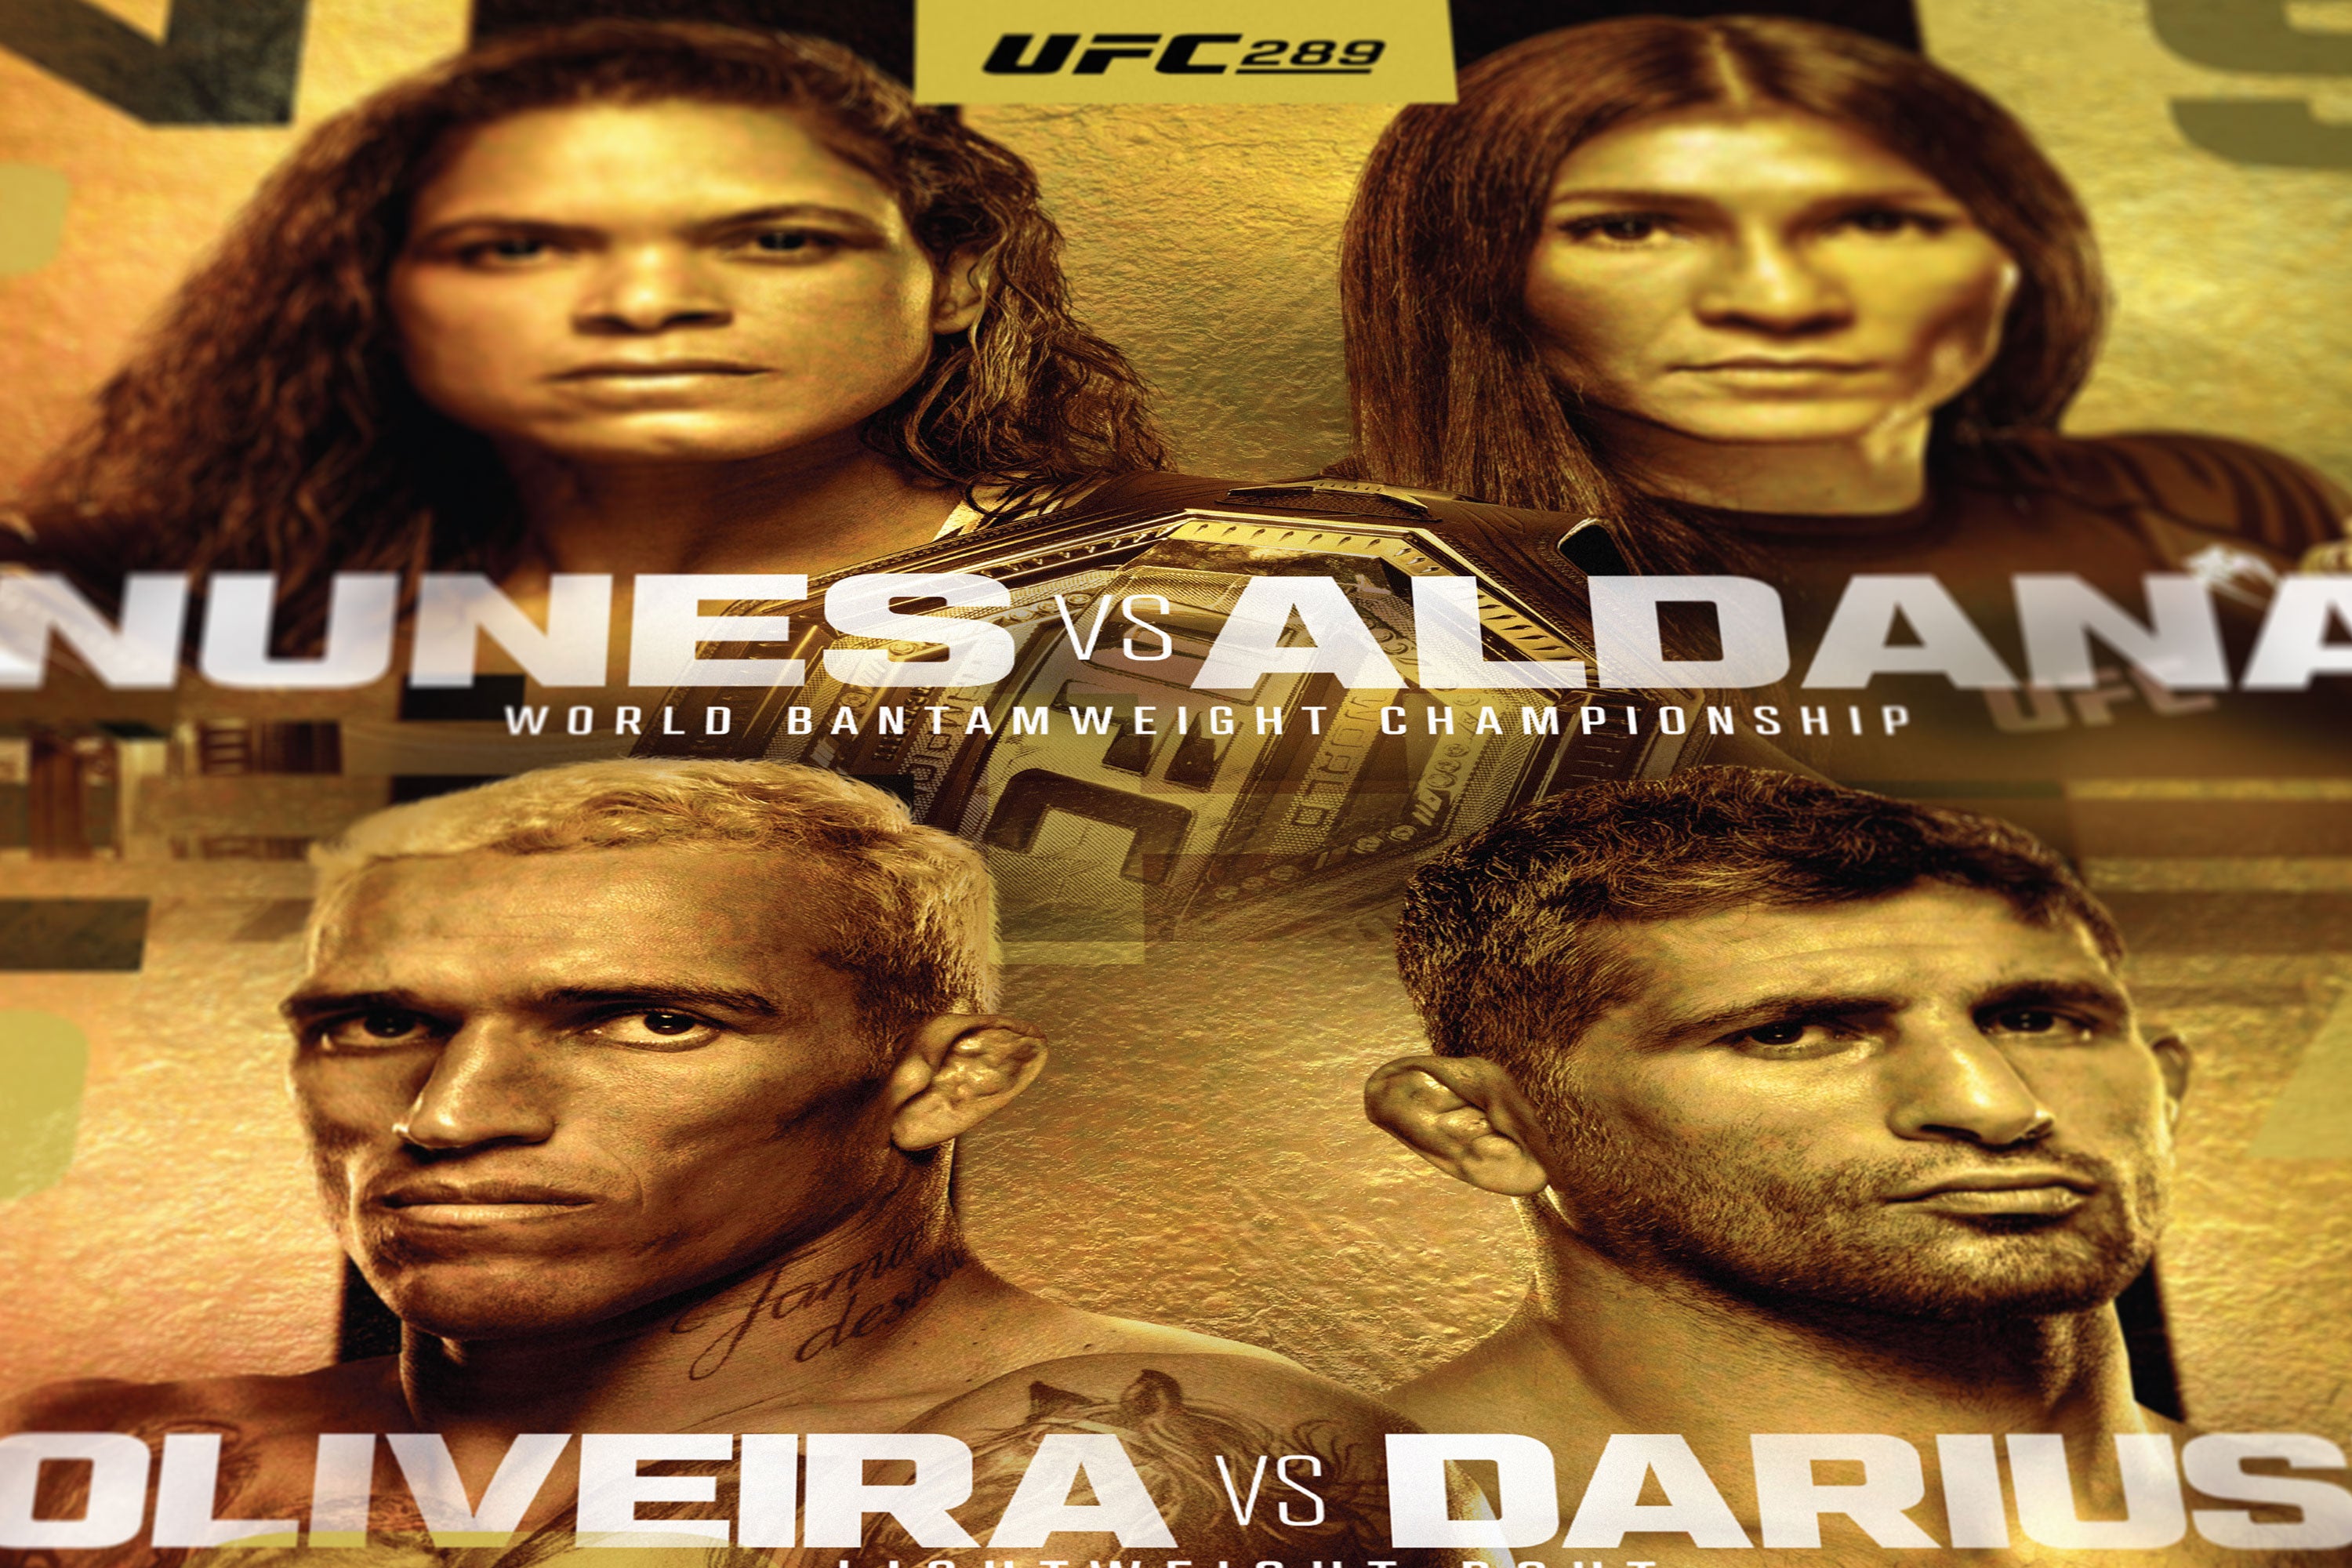 UFC 289: Nunes vs Aldana Autographed Event Poster - Framed